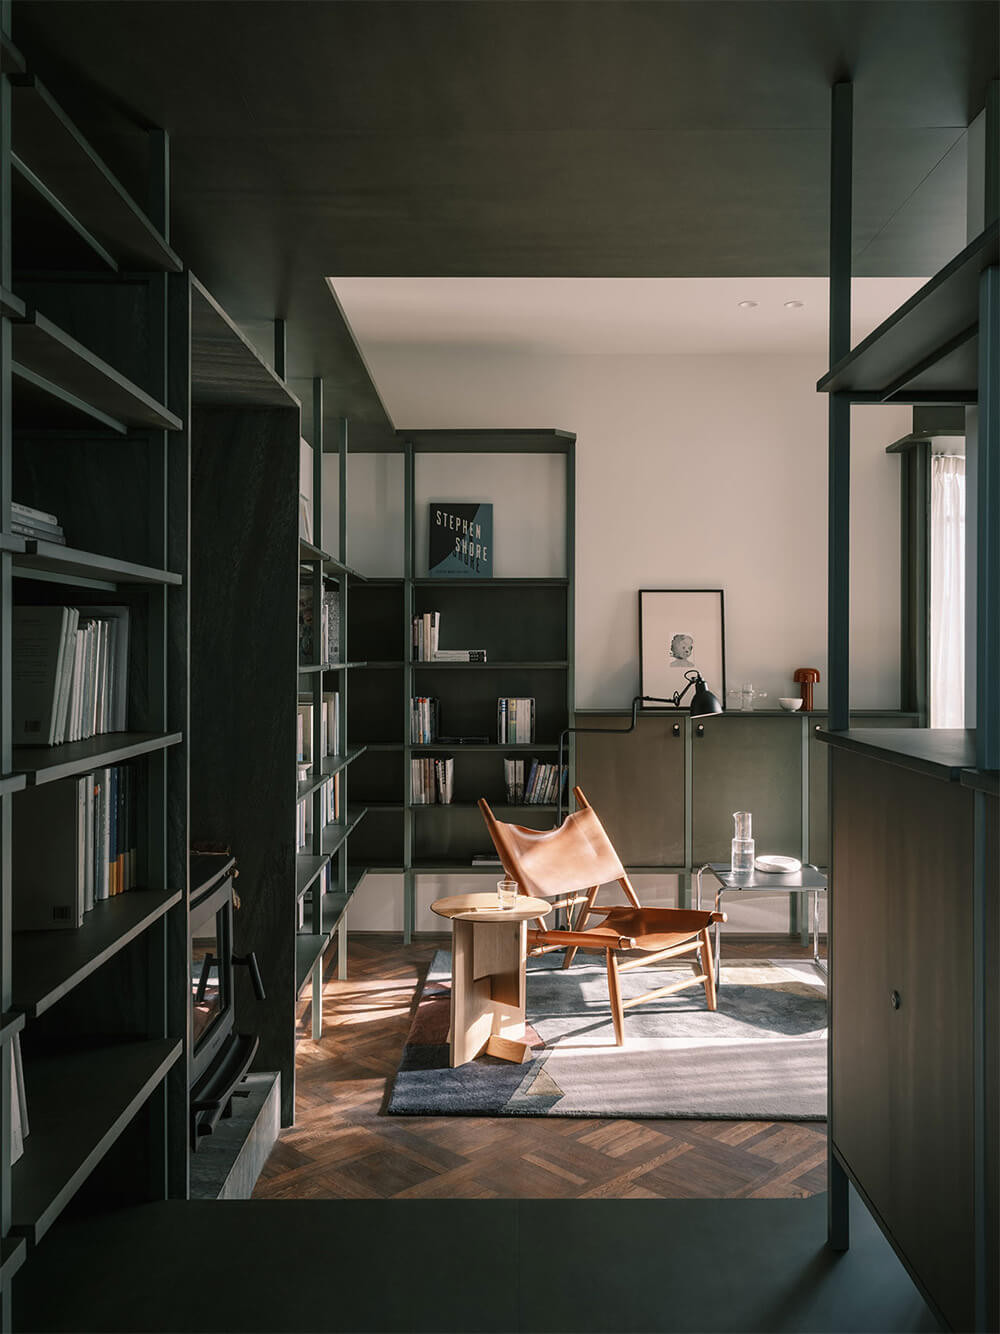 Дизайнеры превратили квартиру в один большой шкаф. Как это выглядит идеи для дома,Интерьер и дизайн